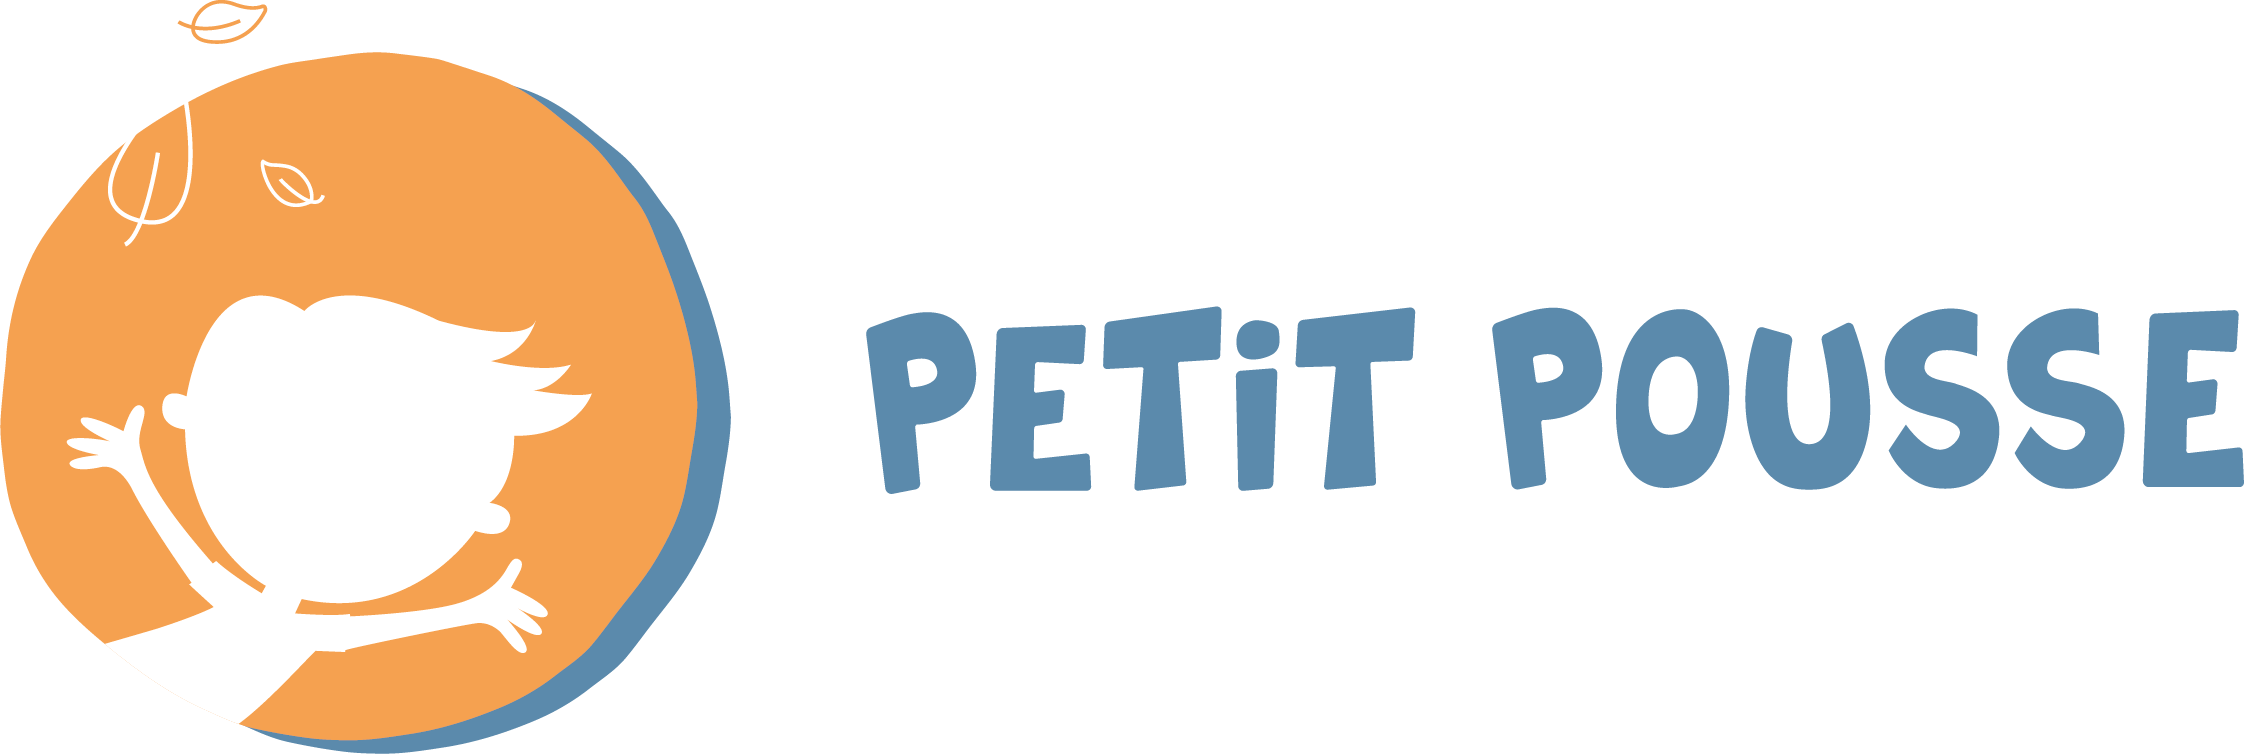 Petit Pousse